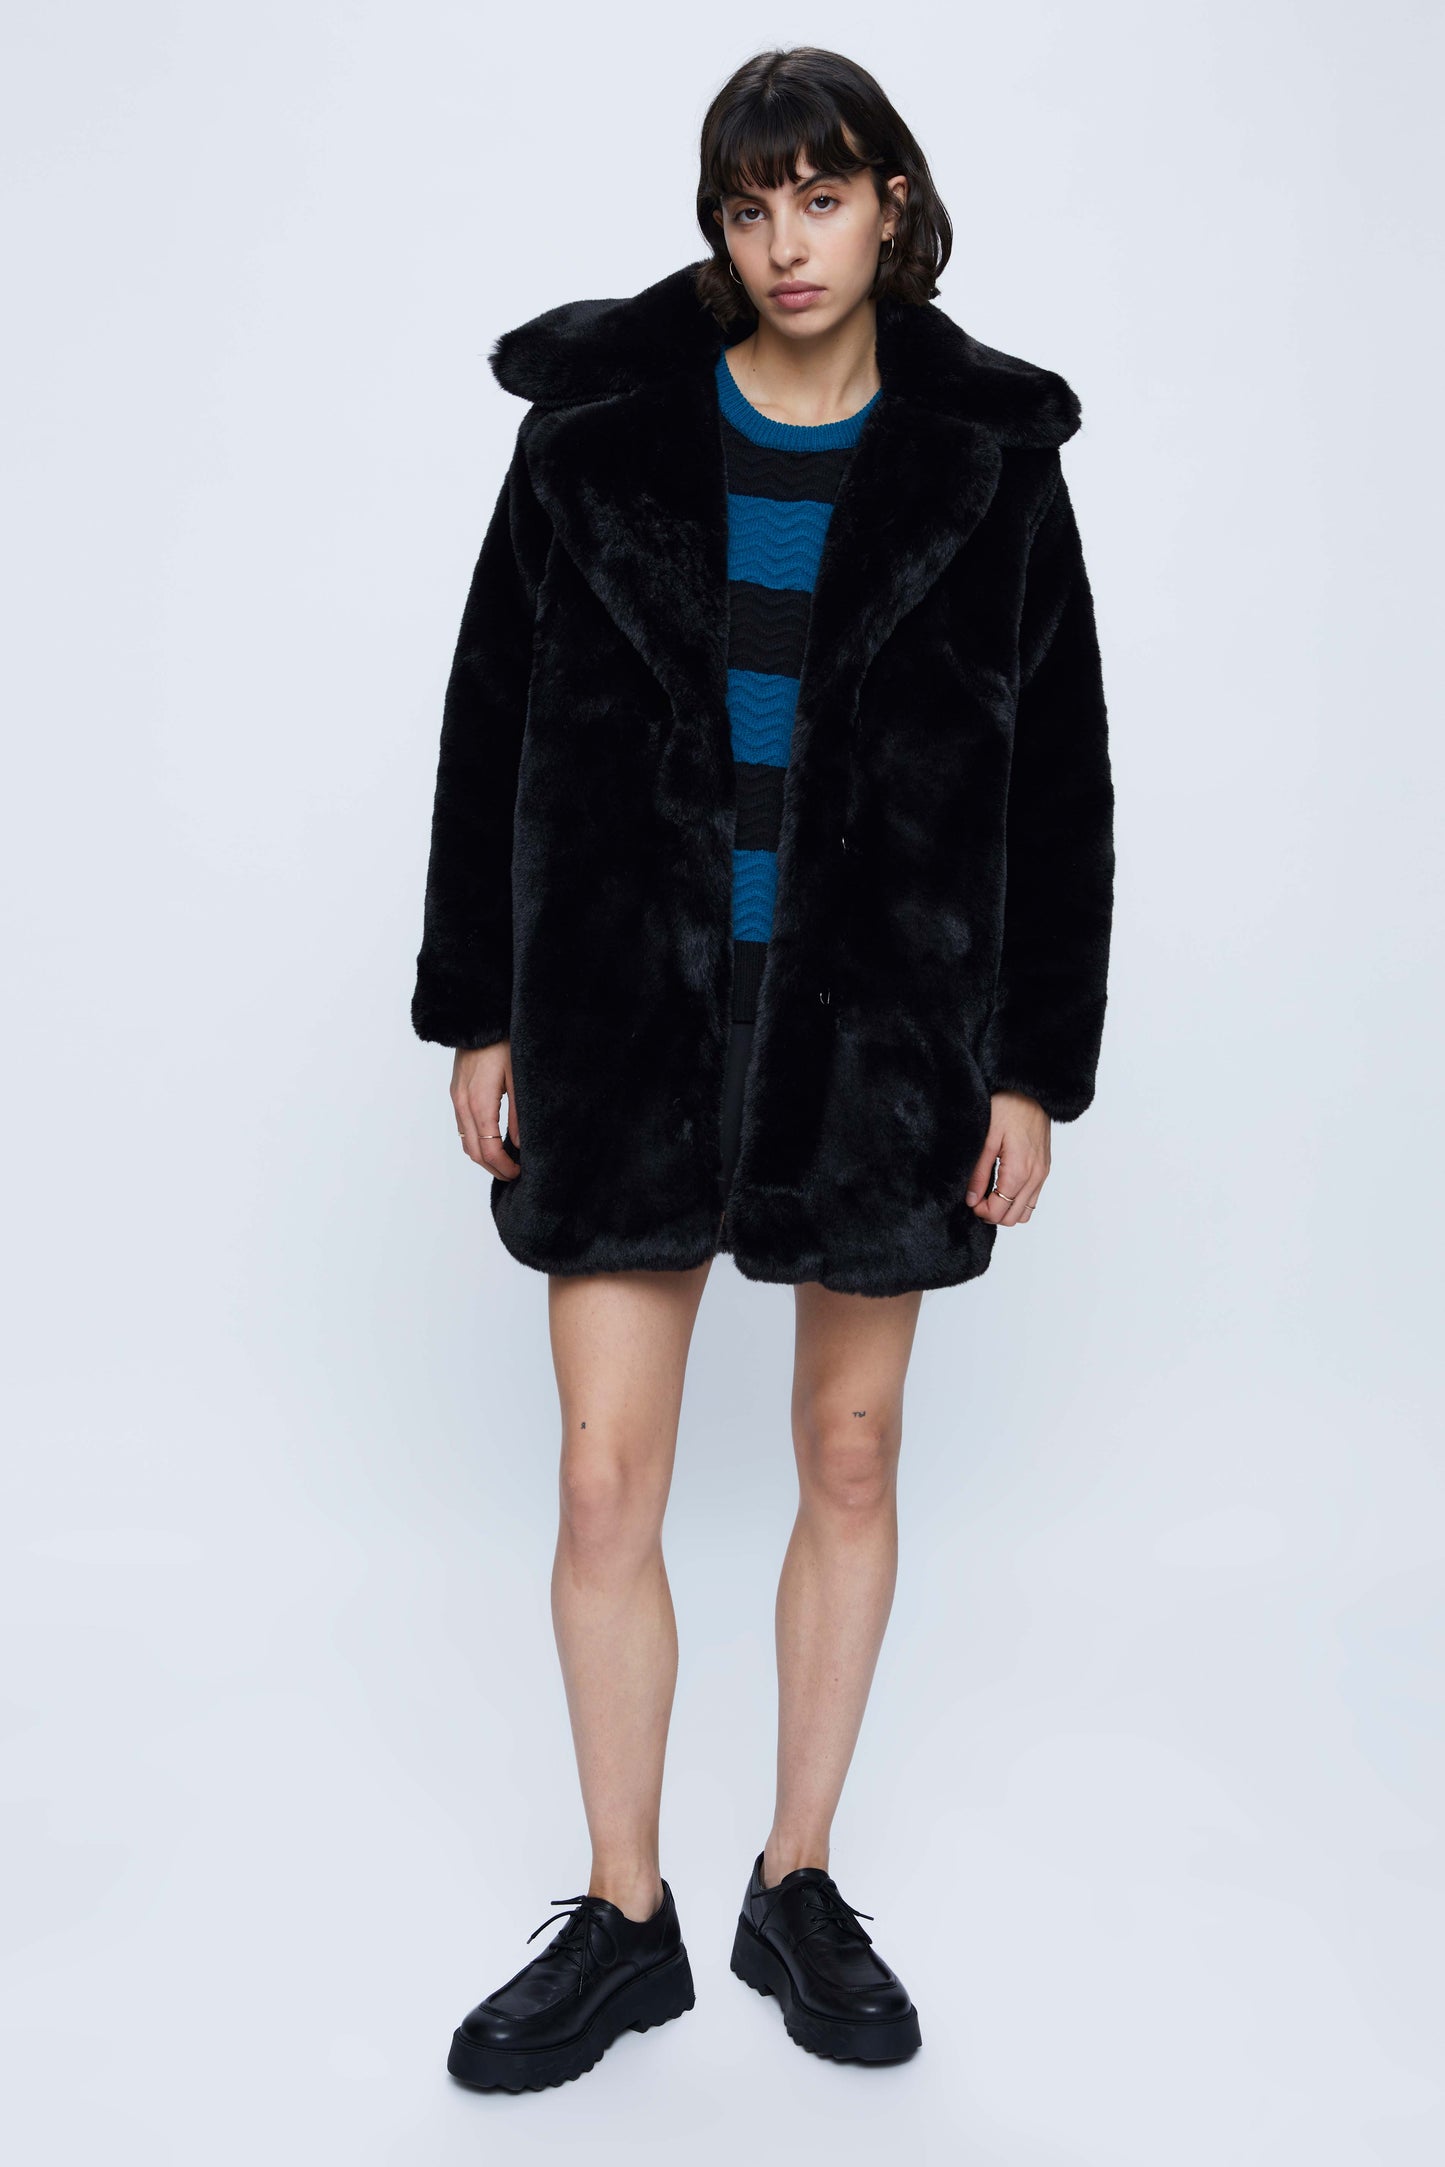 Midi fur coat with black lapel collar